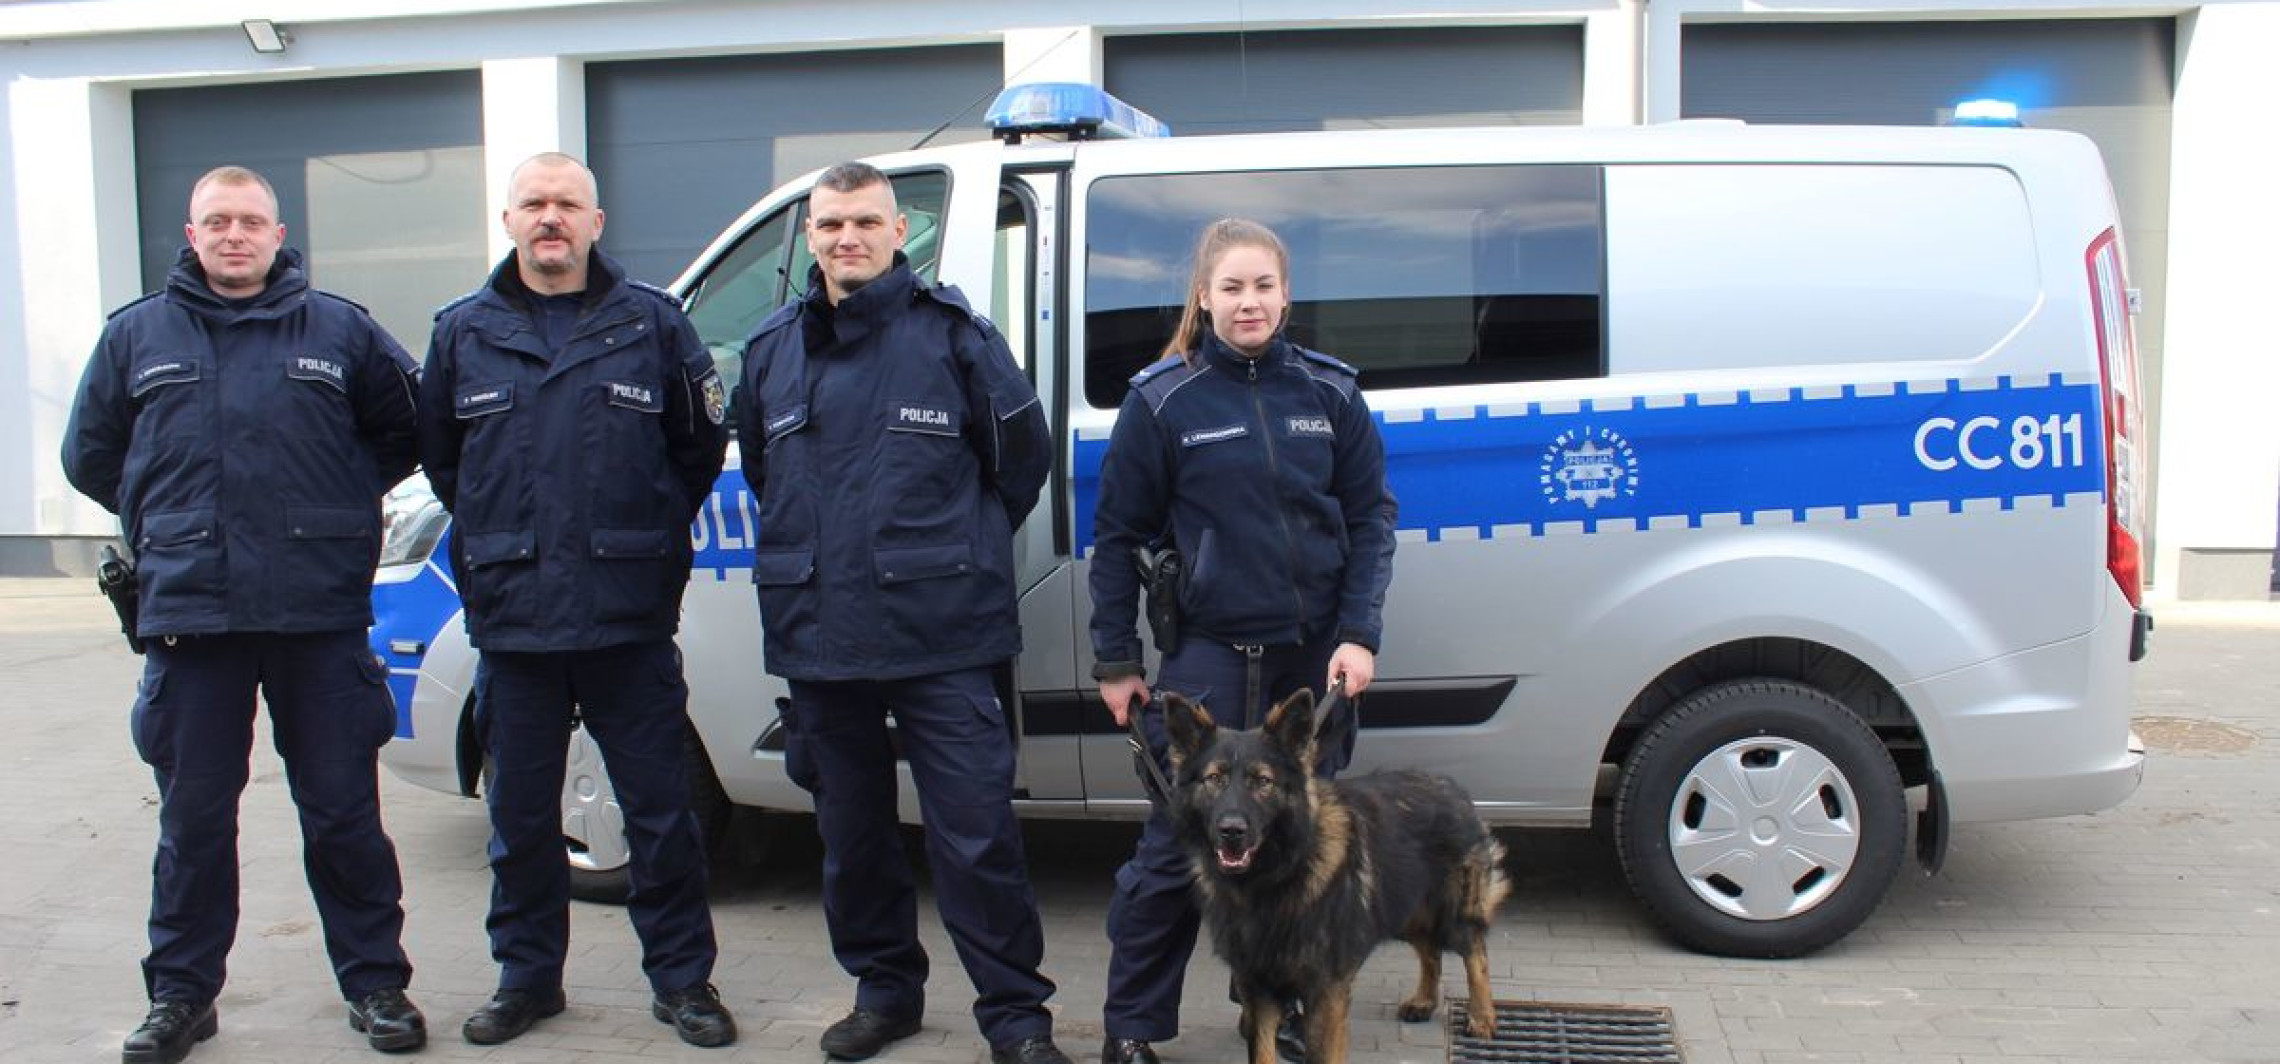 Inowrocław - Policjanci z psami dostali nowe radiowozy